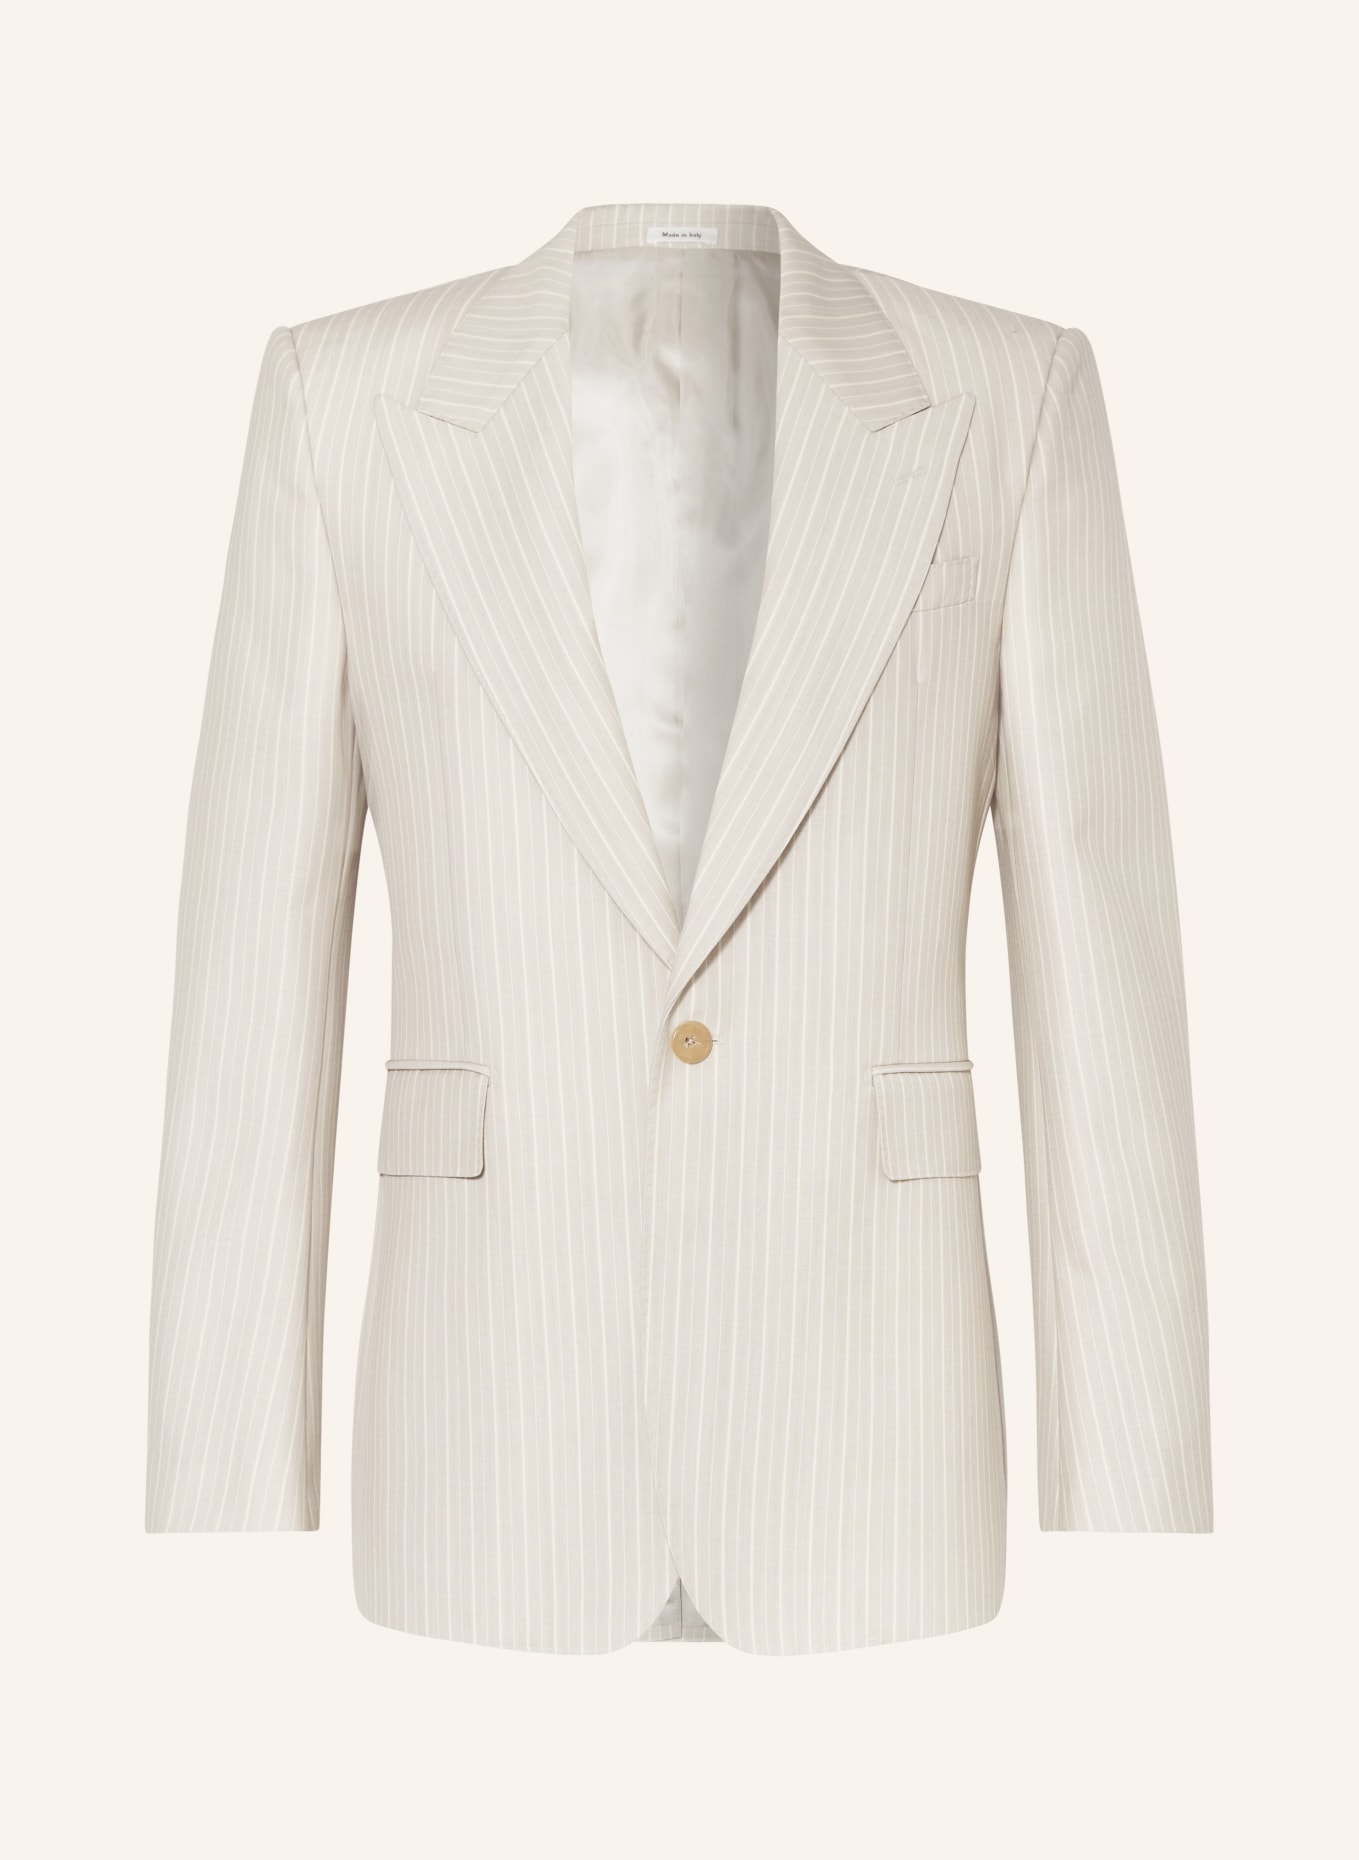 Alexander McQUEEN Suit jacket regular fit, Color: 1196 ICE GREY (Image 1)